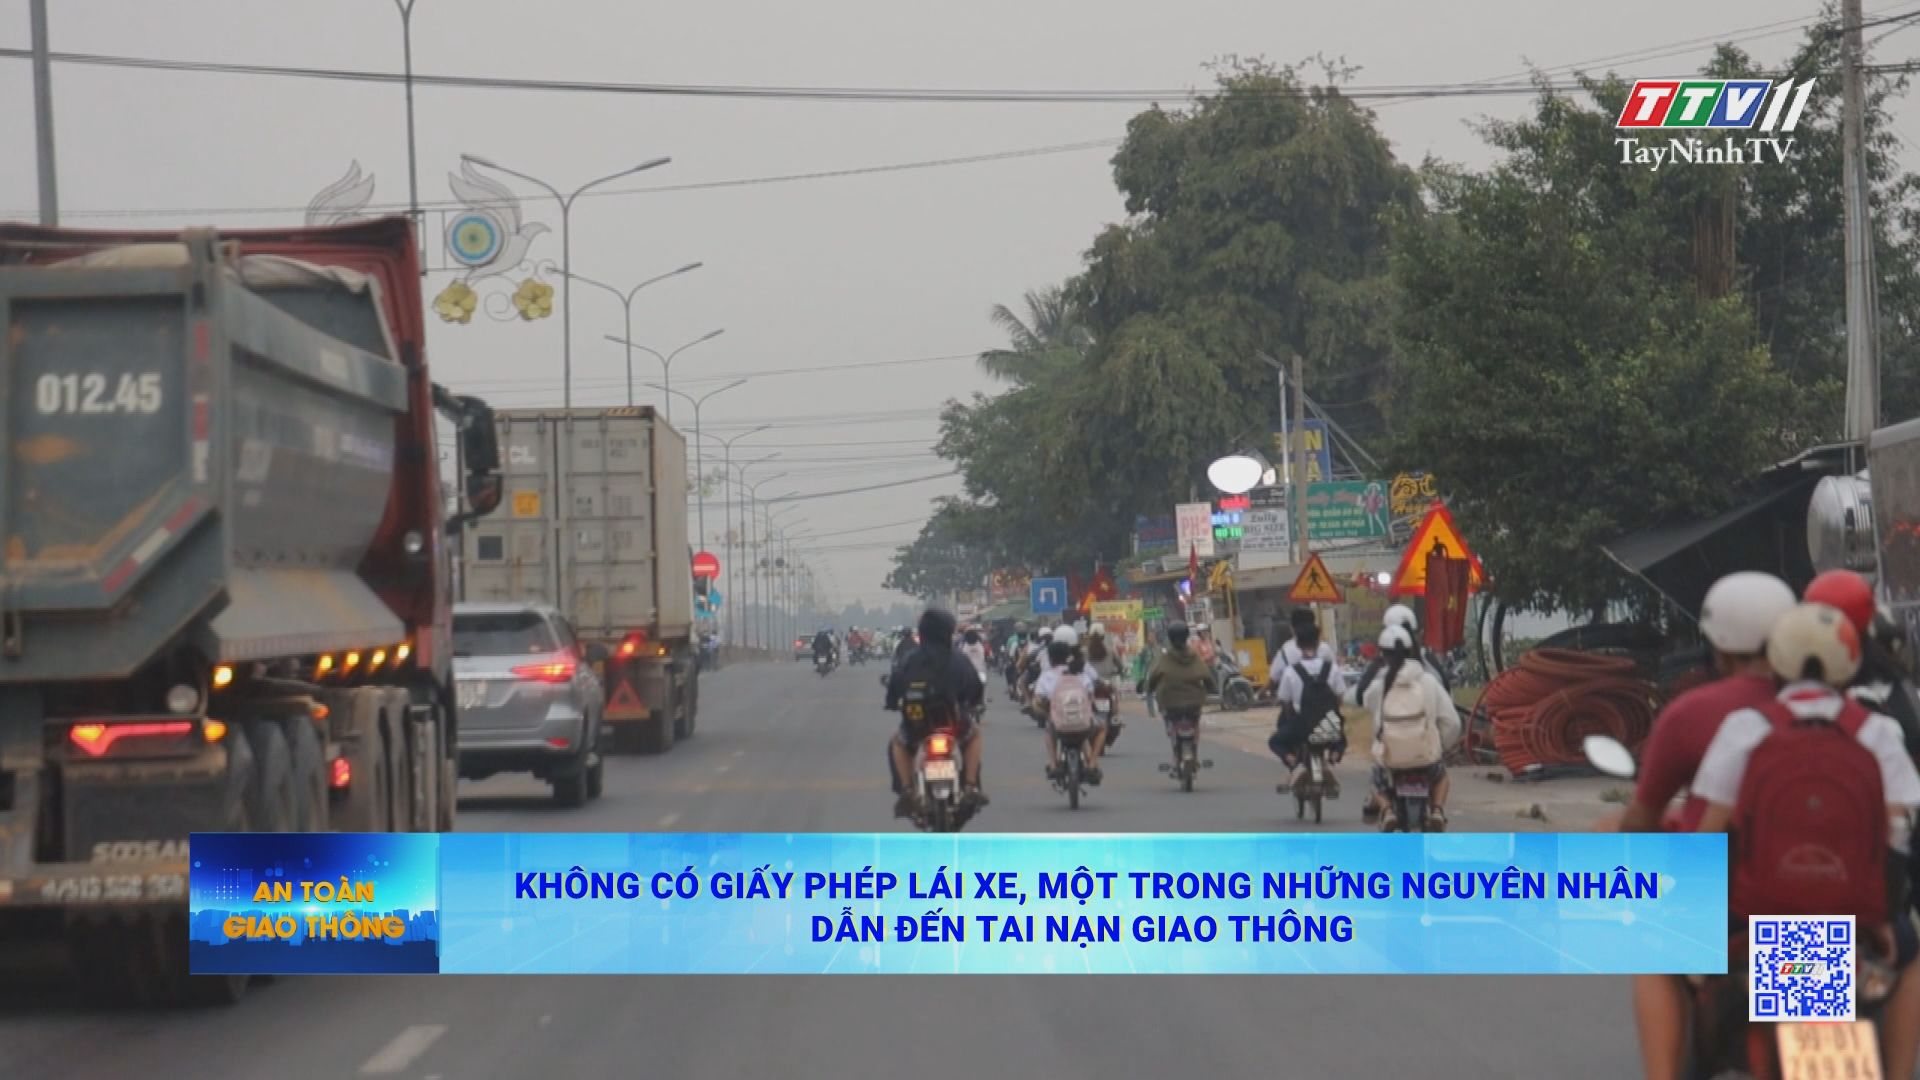 Không có giấy phép lái xe, một trong những nguyên dân dẫn đến tai nạn giao thông | AN TOÀN GIAO THÔNG | TayNinhTV